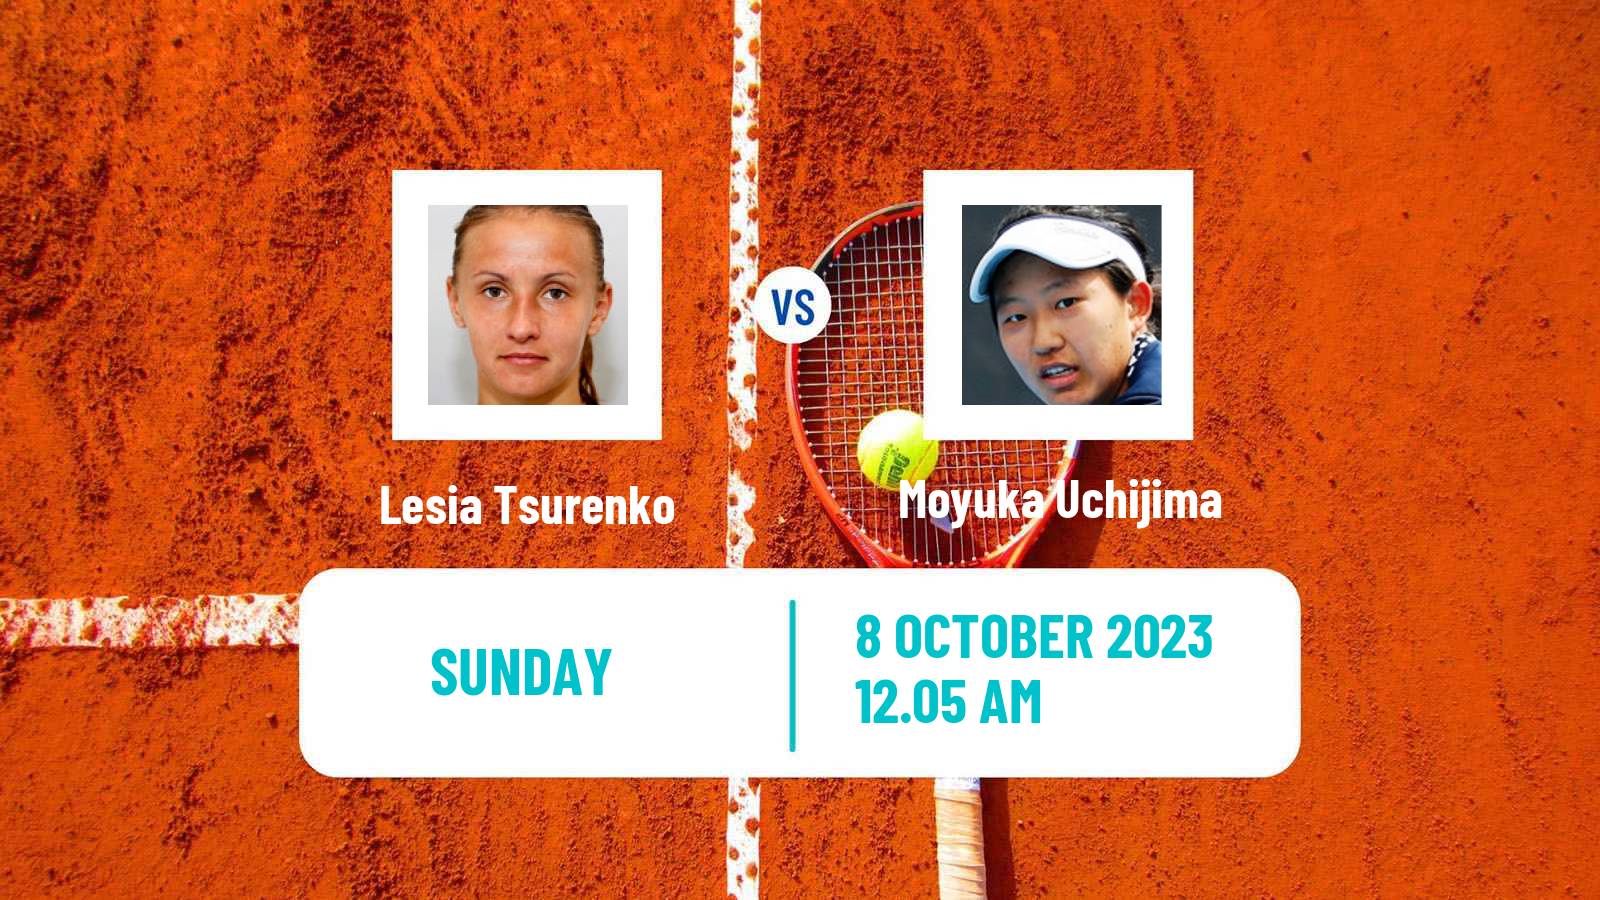 Tennis WTA Zhengzhou Lesia Tsurenko - Moyuka Uchijima